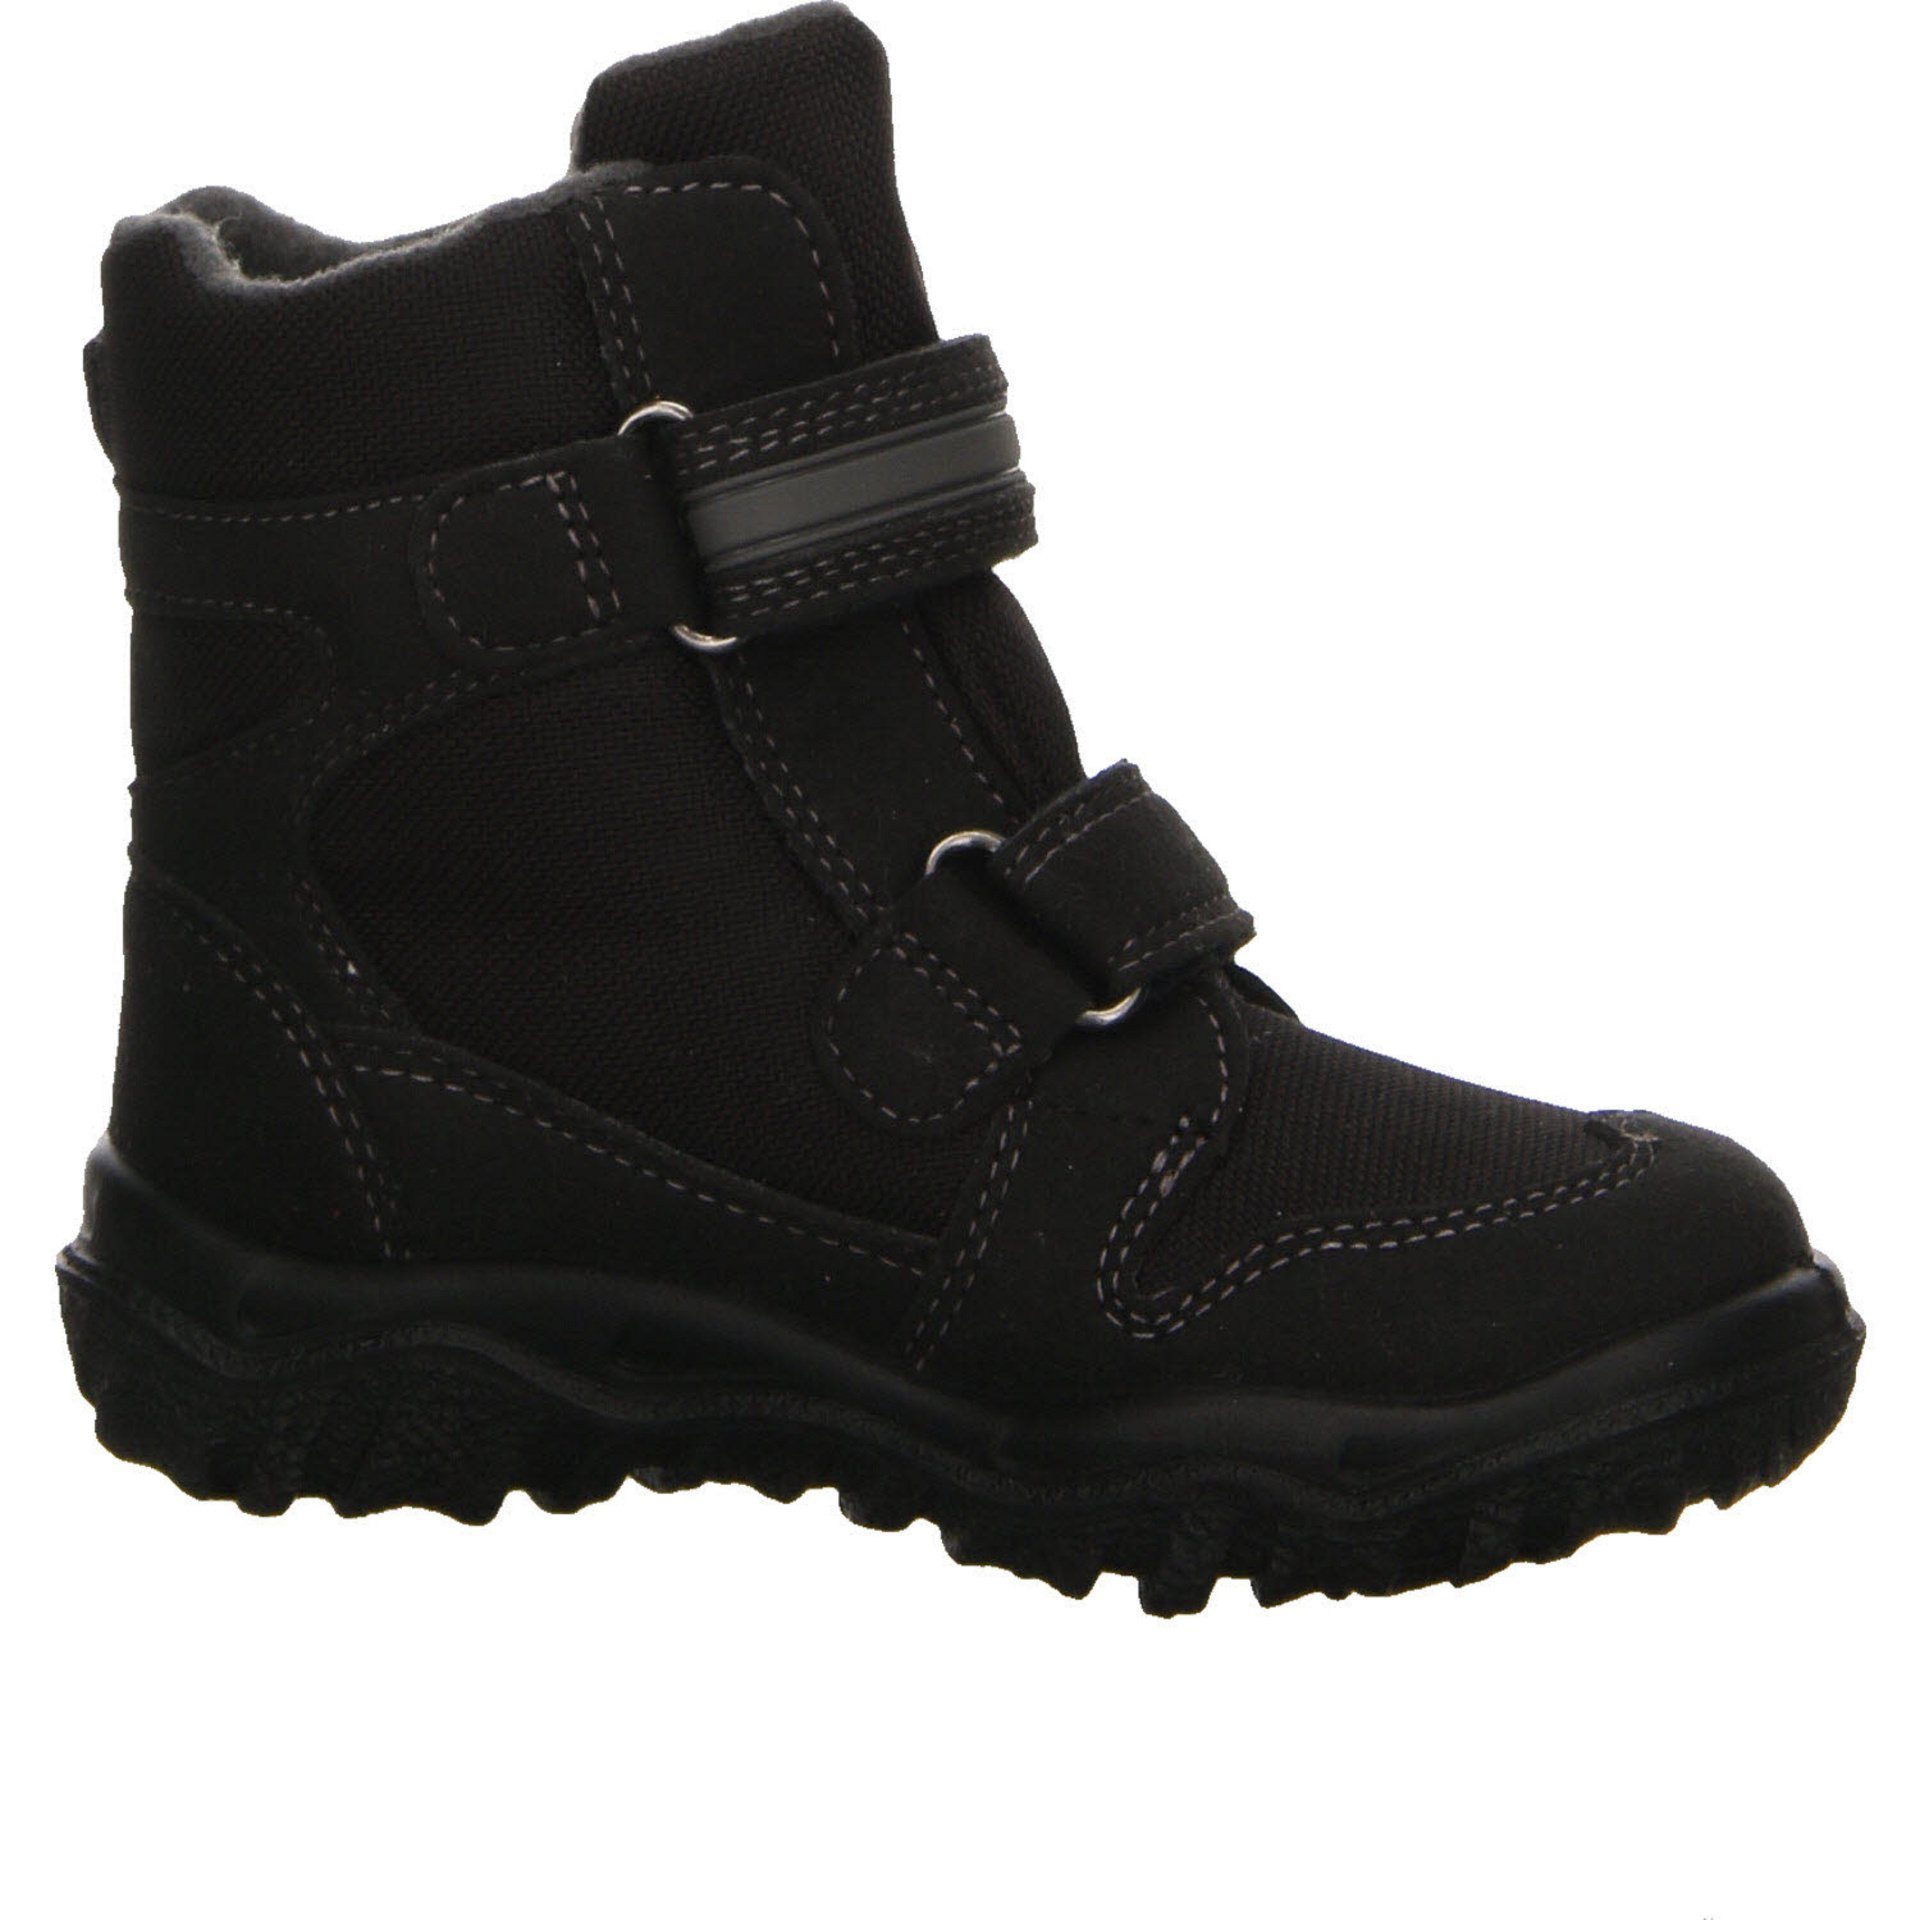 2 Superfit schwarz grau Jungen Gore-Tex Stiefel Boots Schuhe Husky Stiefel Synthetikkombination